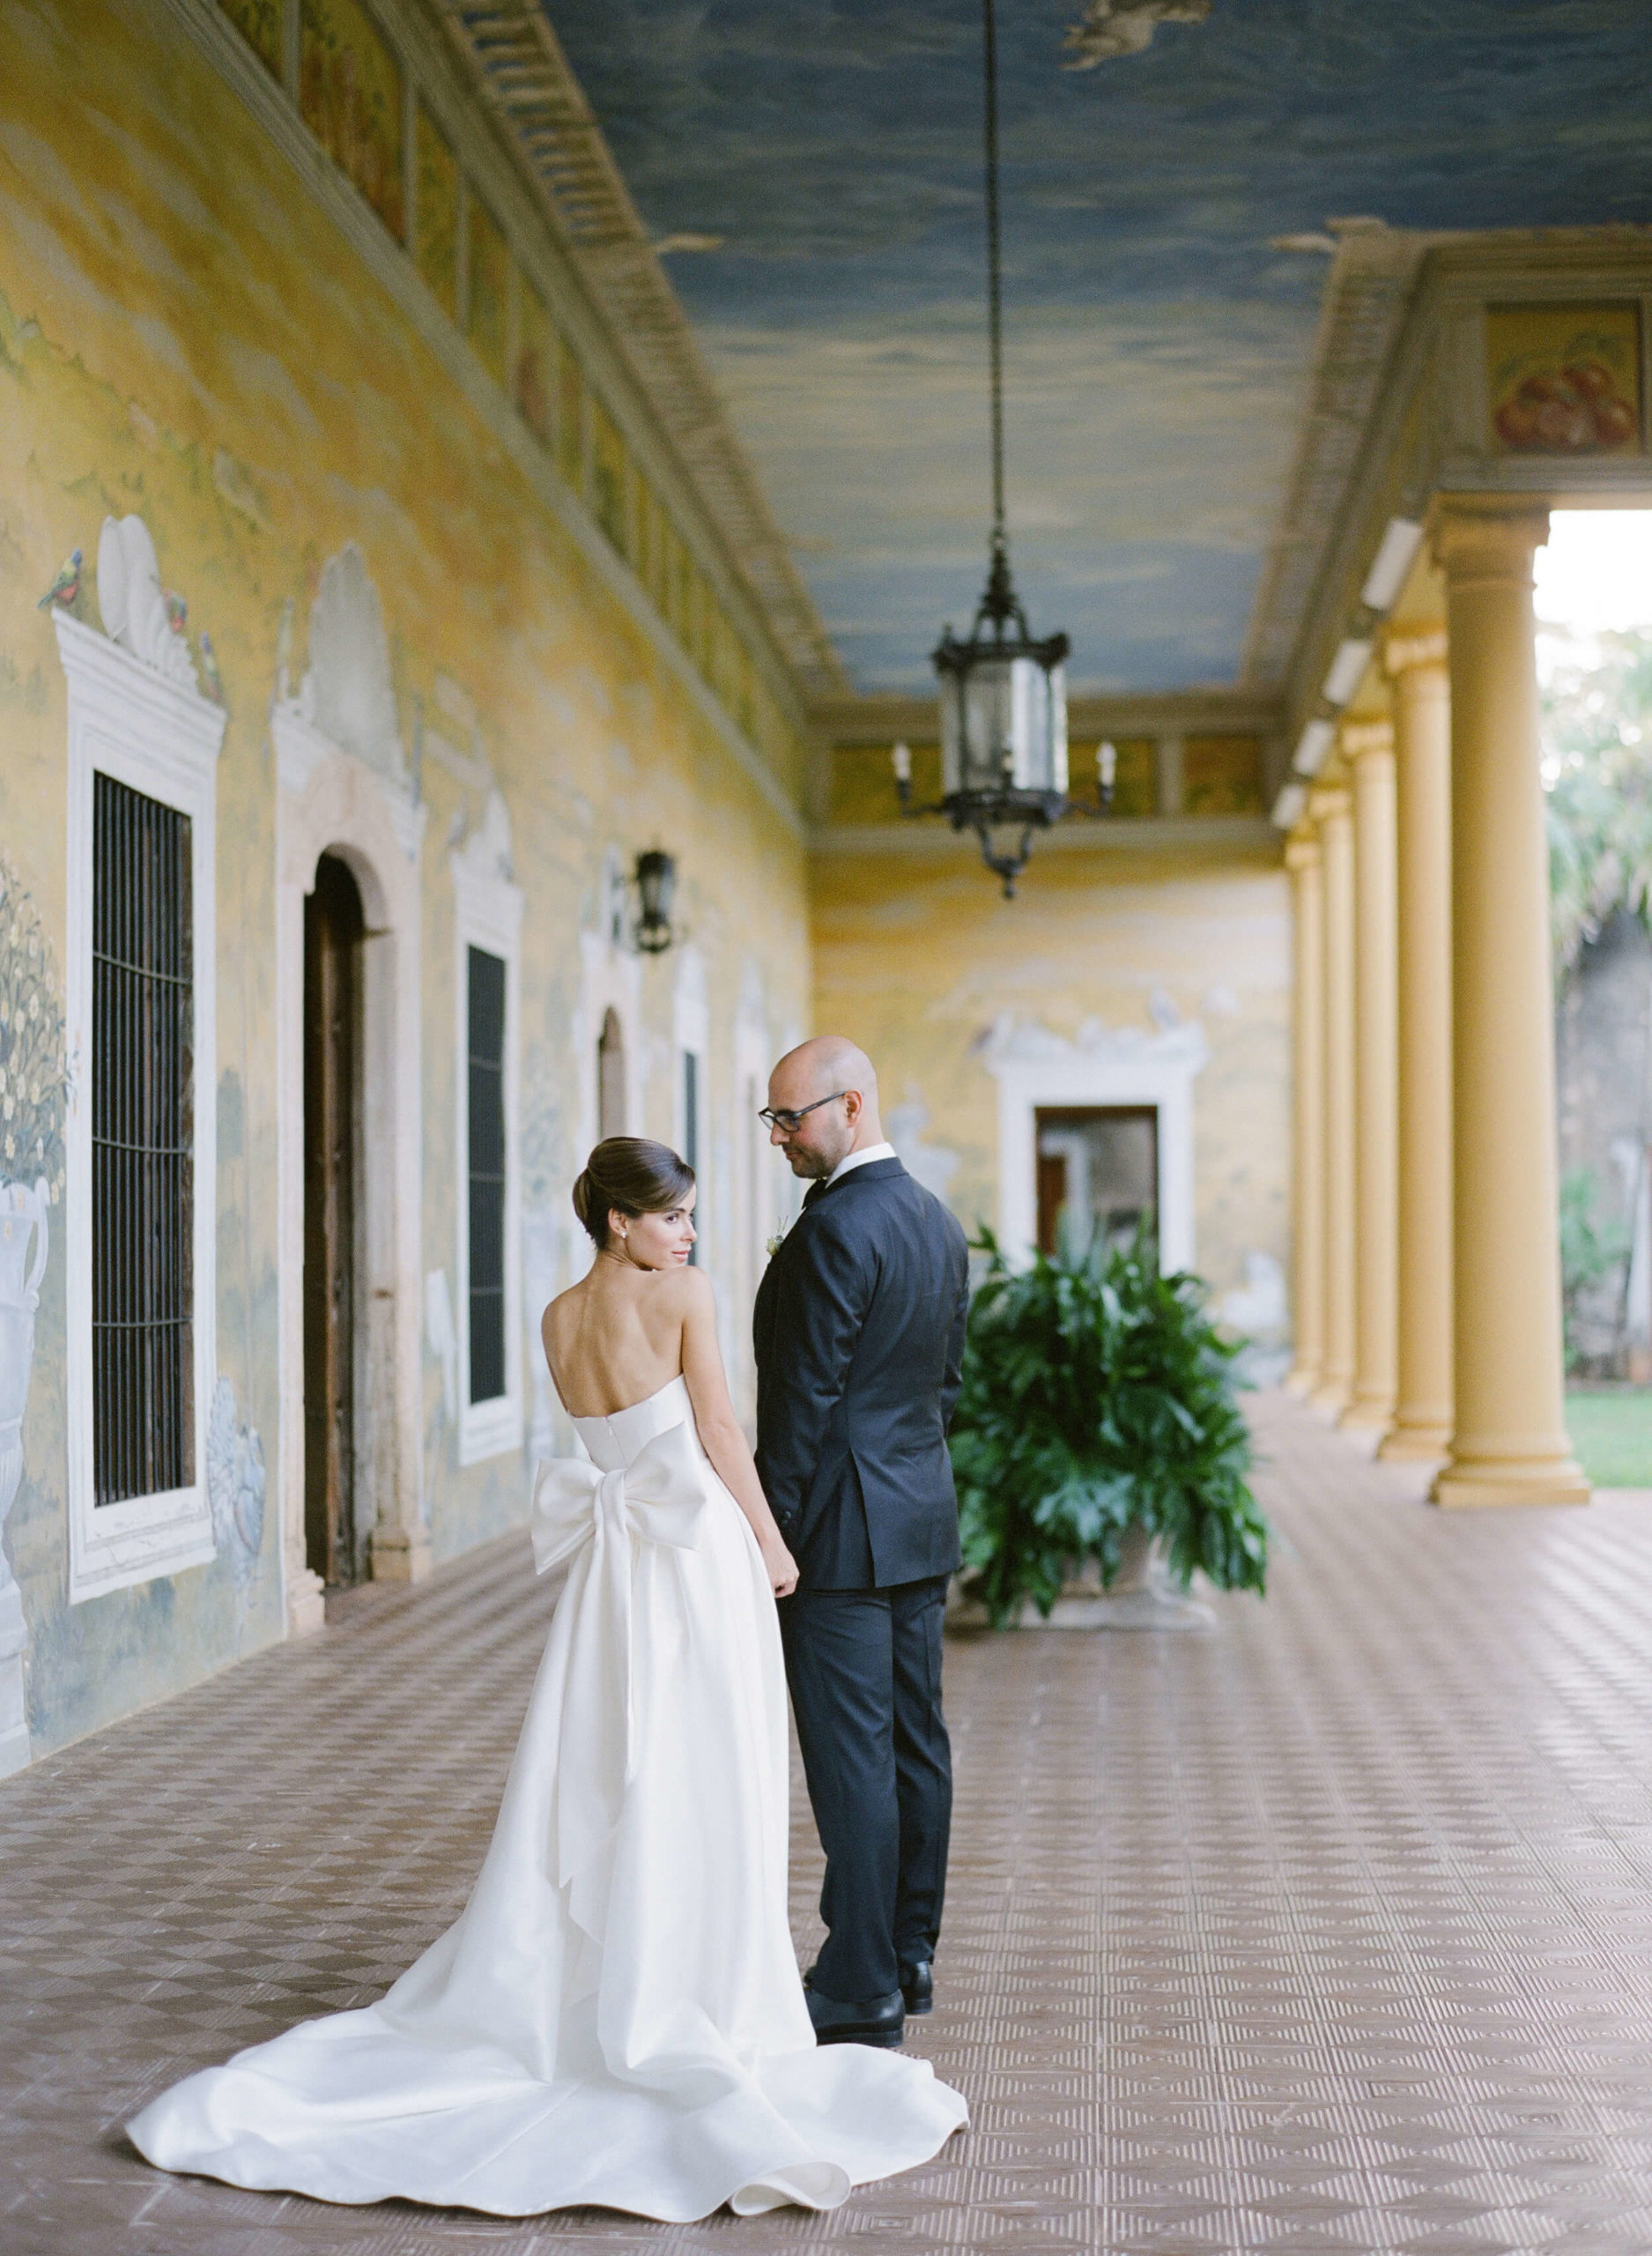 Bride and groom pose in historic hacienda